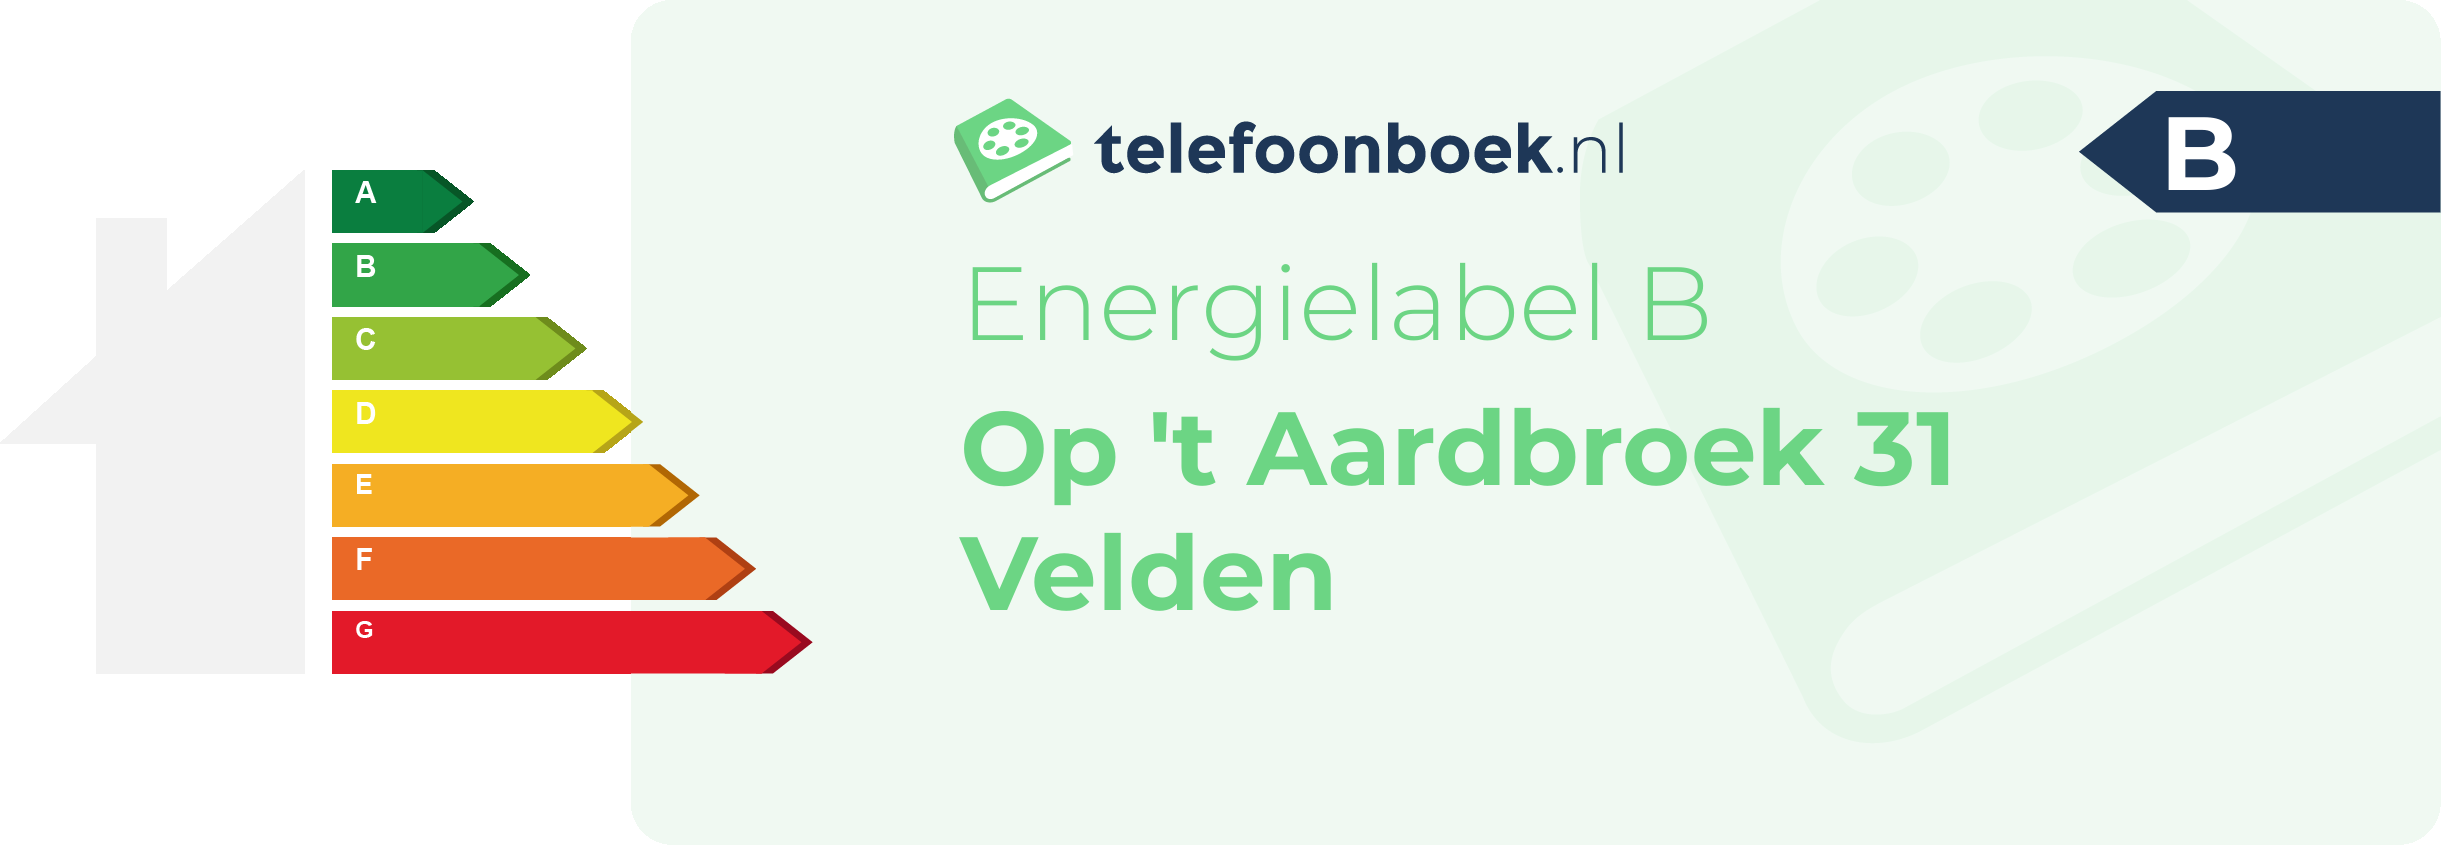 Energielabel Op 't Aardbroek 31 Velden